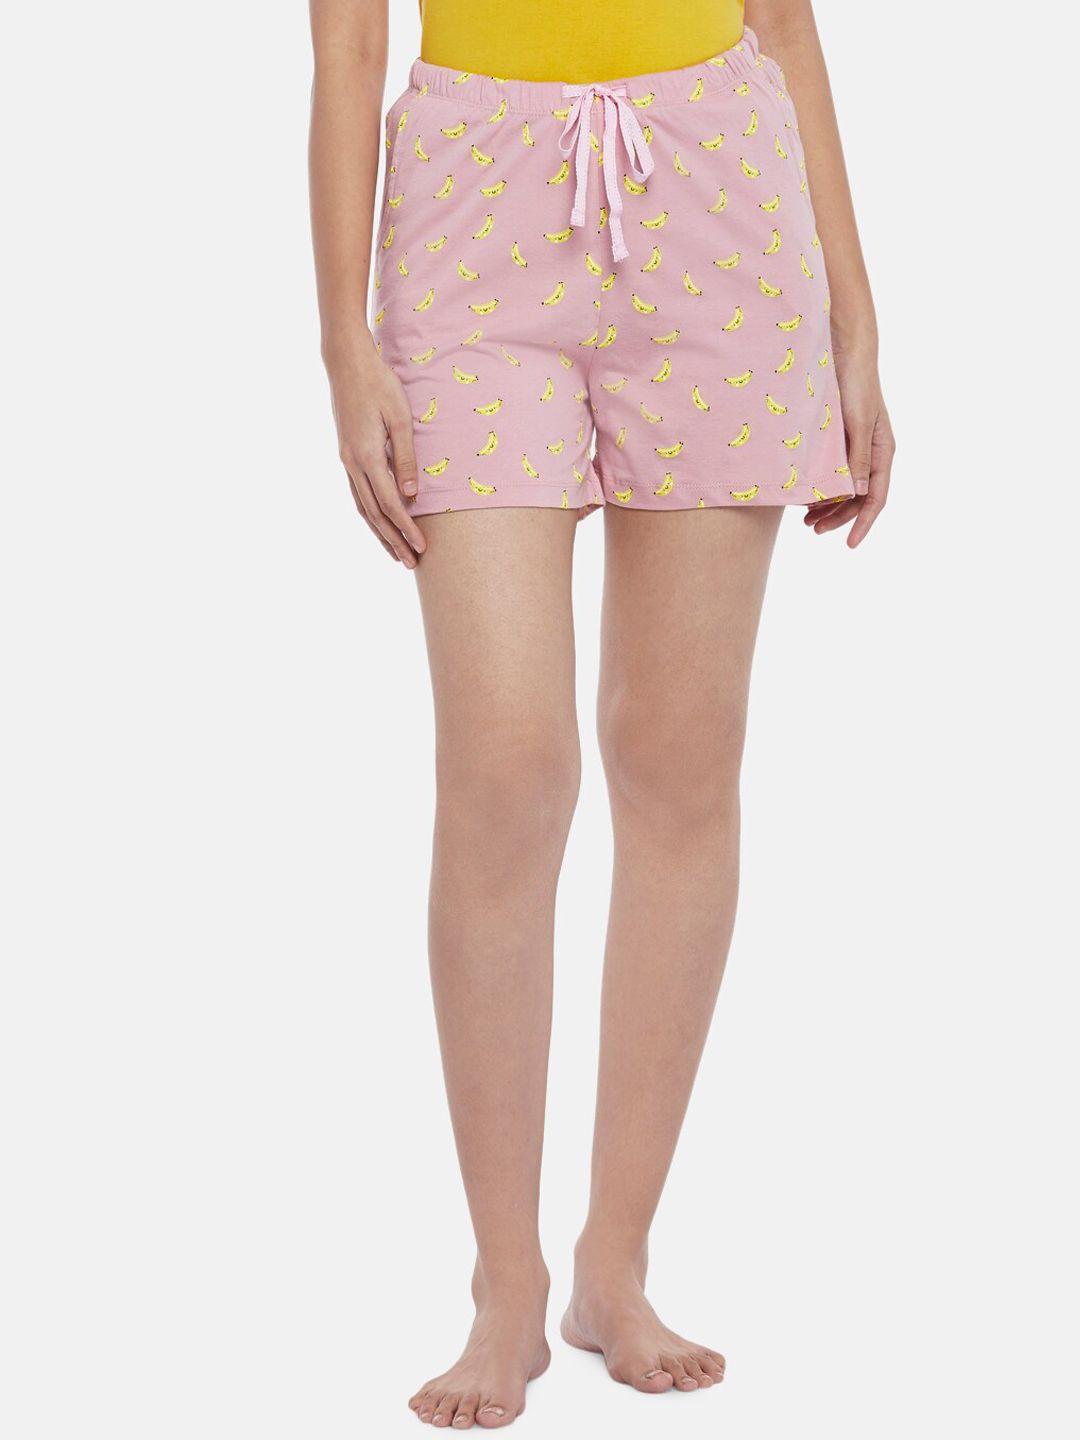 dreamz by pantaloons women pink printed shorts